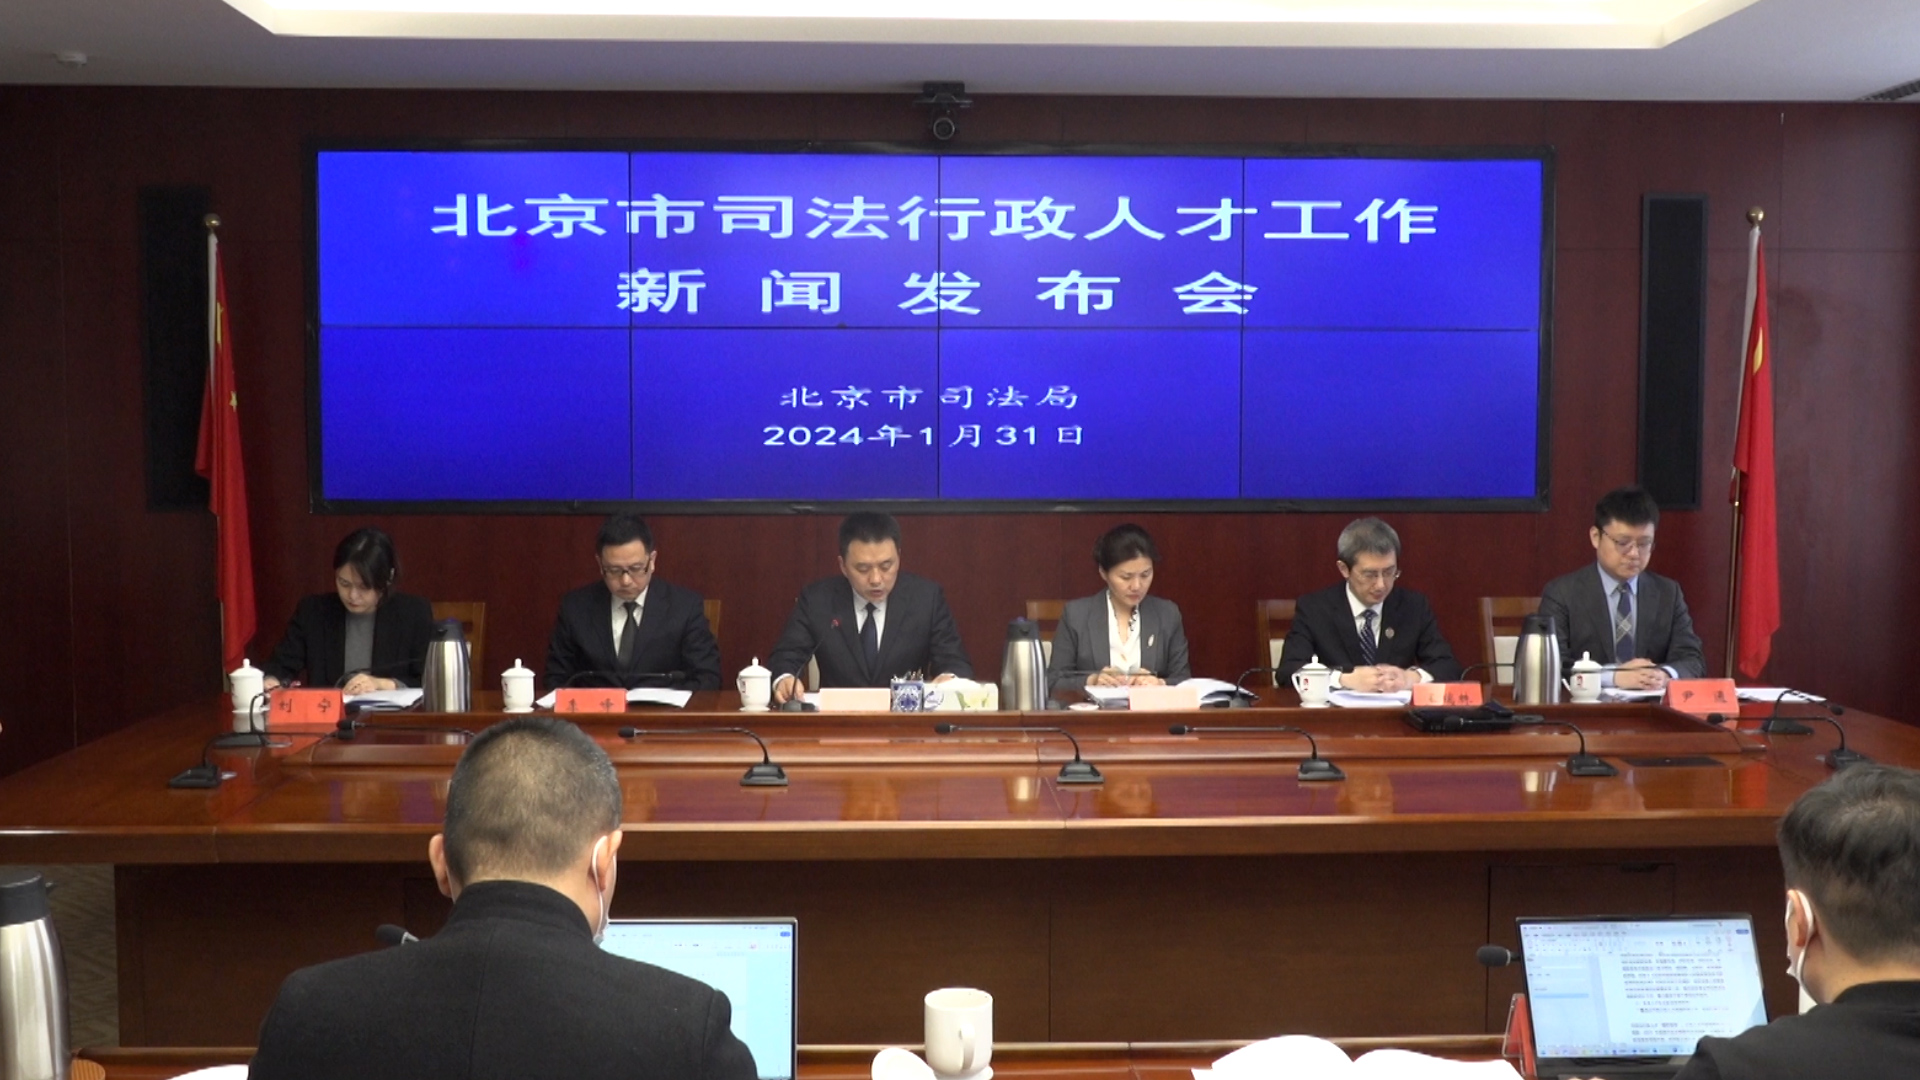 [直击一线]北京市司法局 打造司法行政人才“雁阵格局”